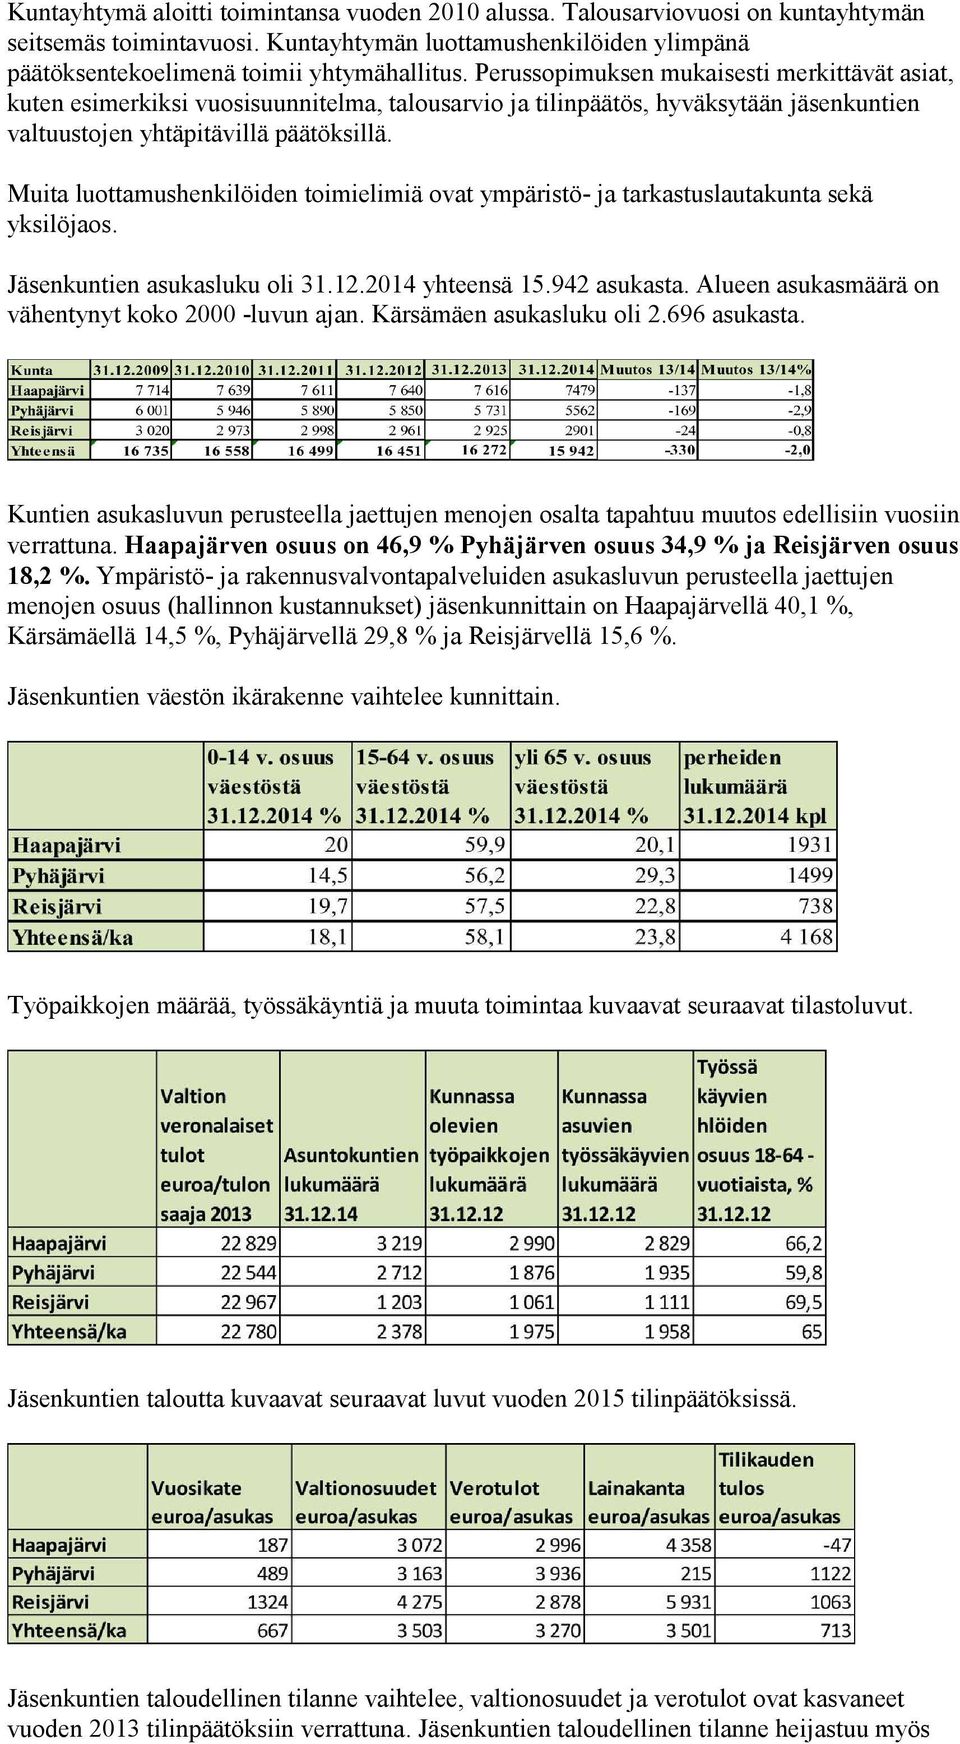 Muita luottamushenkilöiden toimielimiä ovat ympäristö- ja tarkastuslautakunta sekä yksilöjaos. Jäsenkuntien asukasluku oli 31.12.2014 yhteensä 15.942 asukasta.